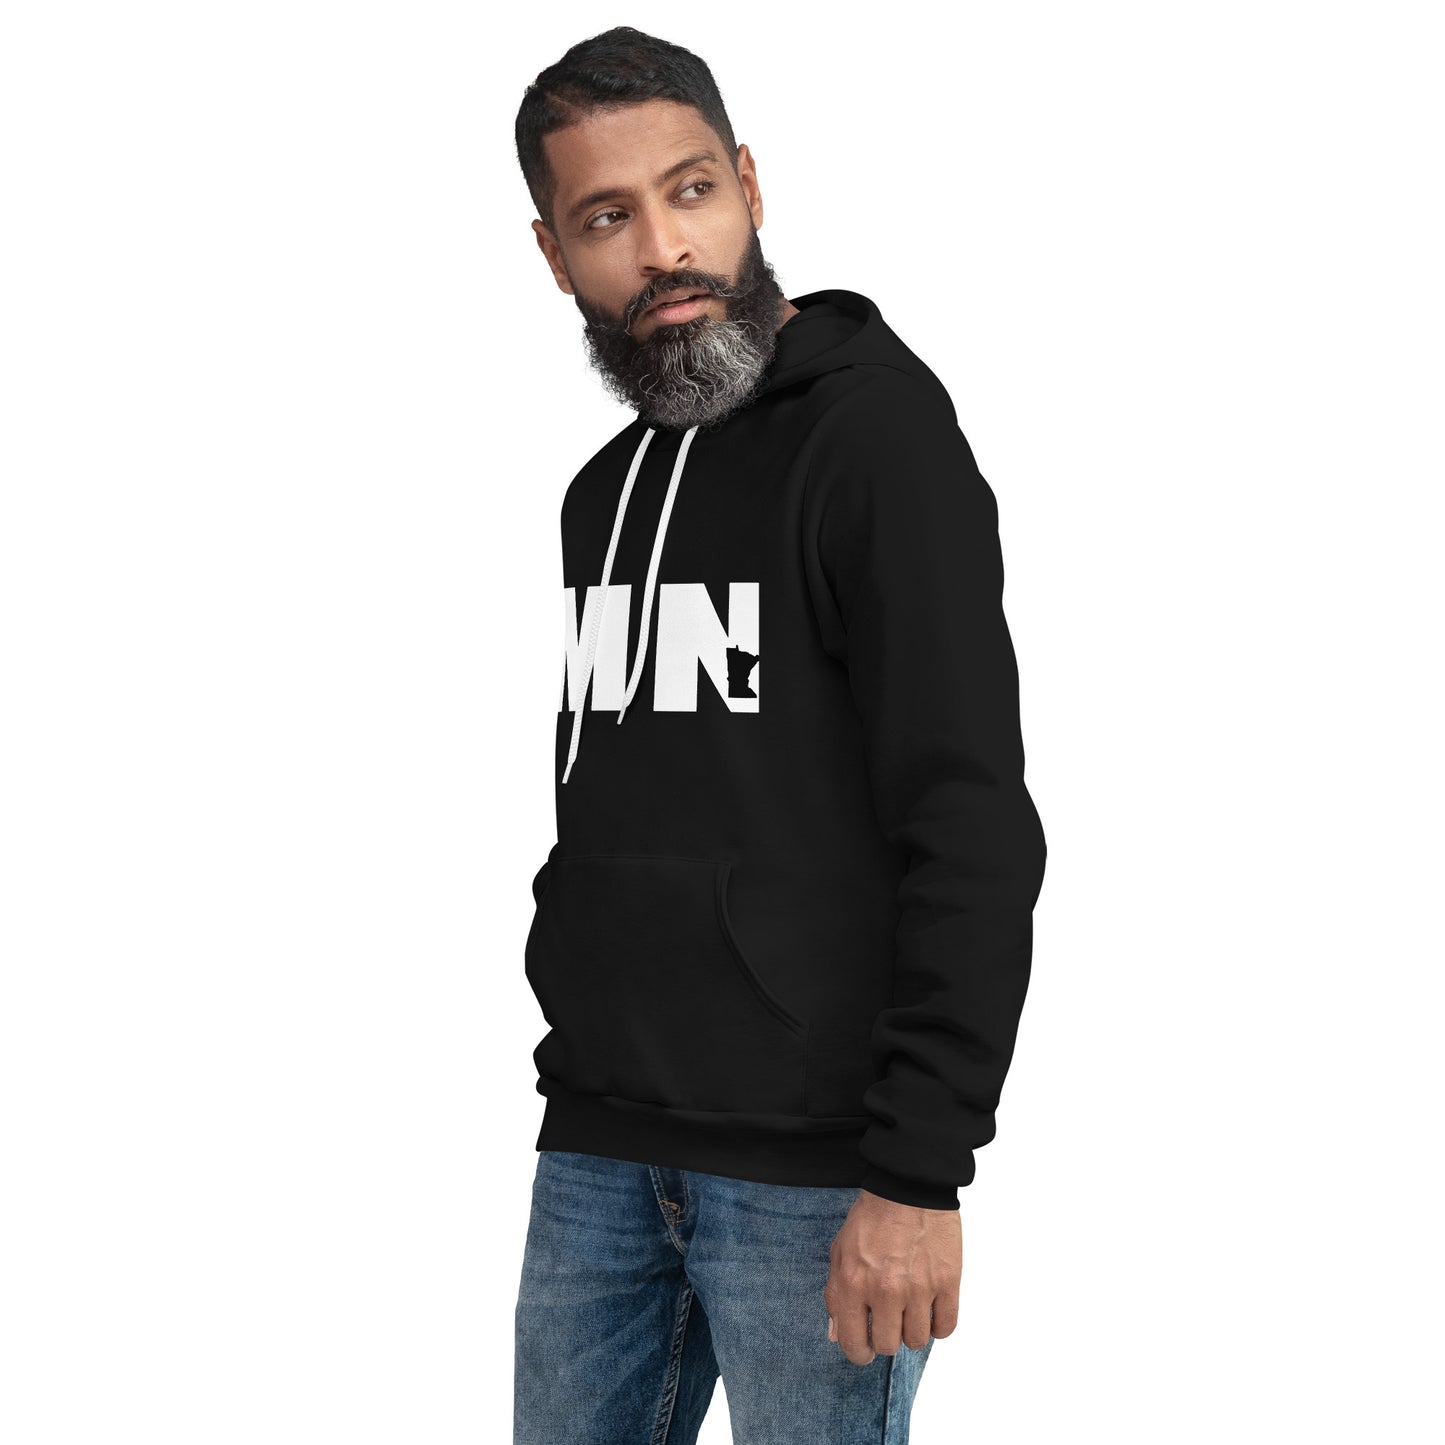 Unisex hoodie - MN (Minnesota)